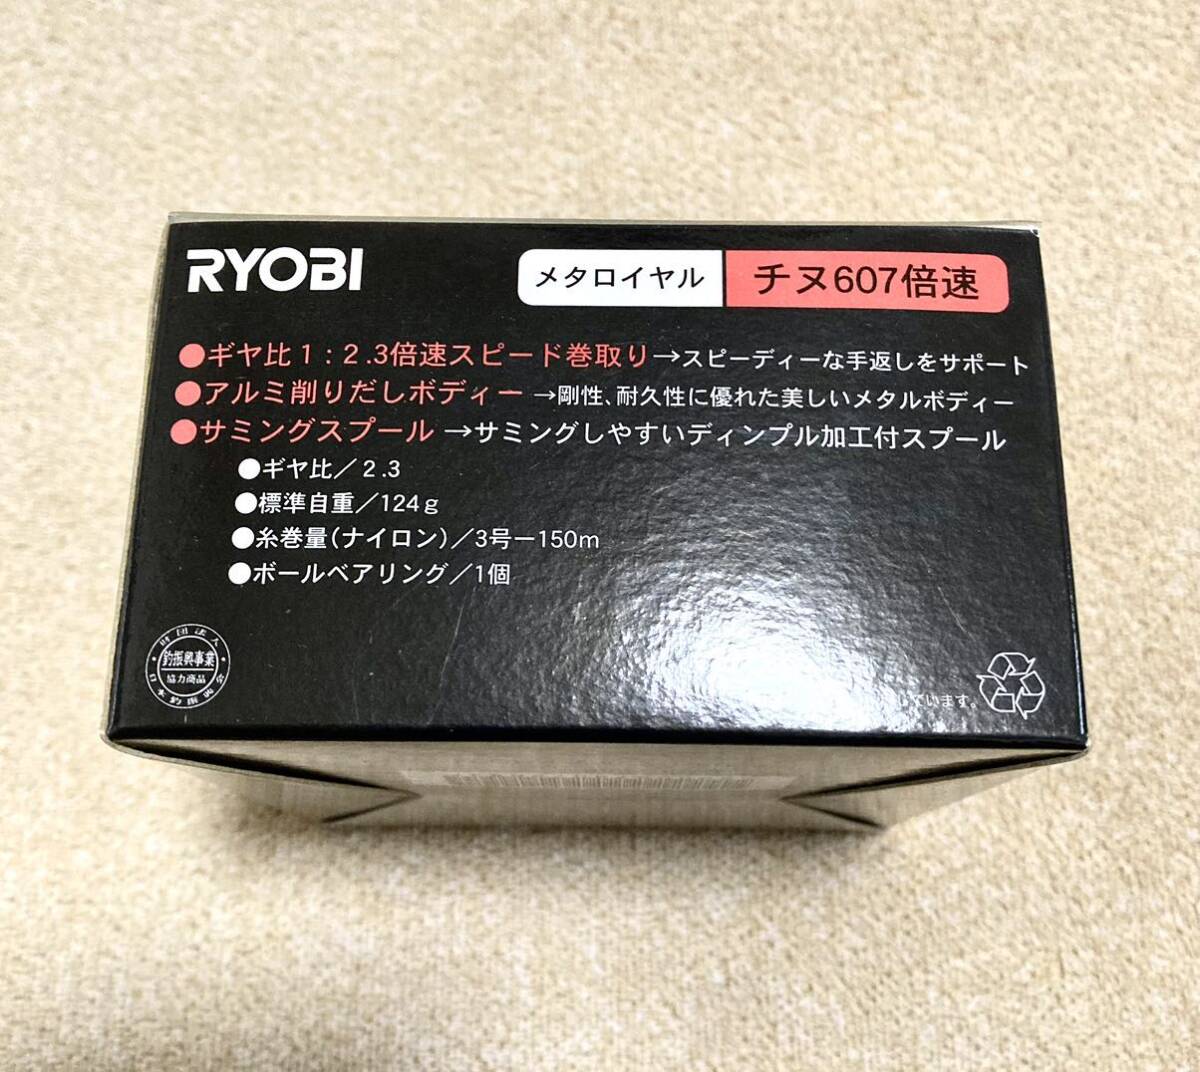  Ryobi meta Royal морской лещ 607 скоростей б/у товар 